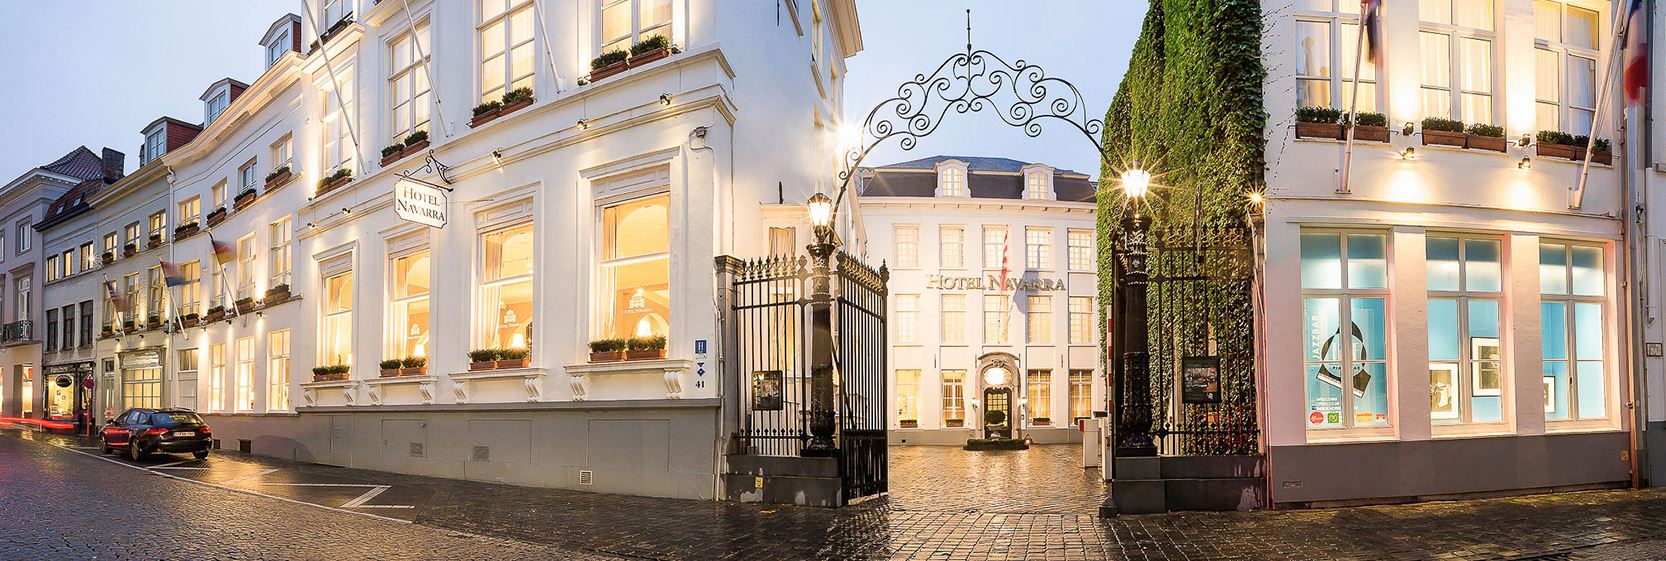 Hotel Navarra Brugge Beleef Brugge Als Nooit Tevoren